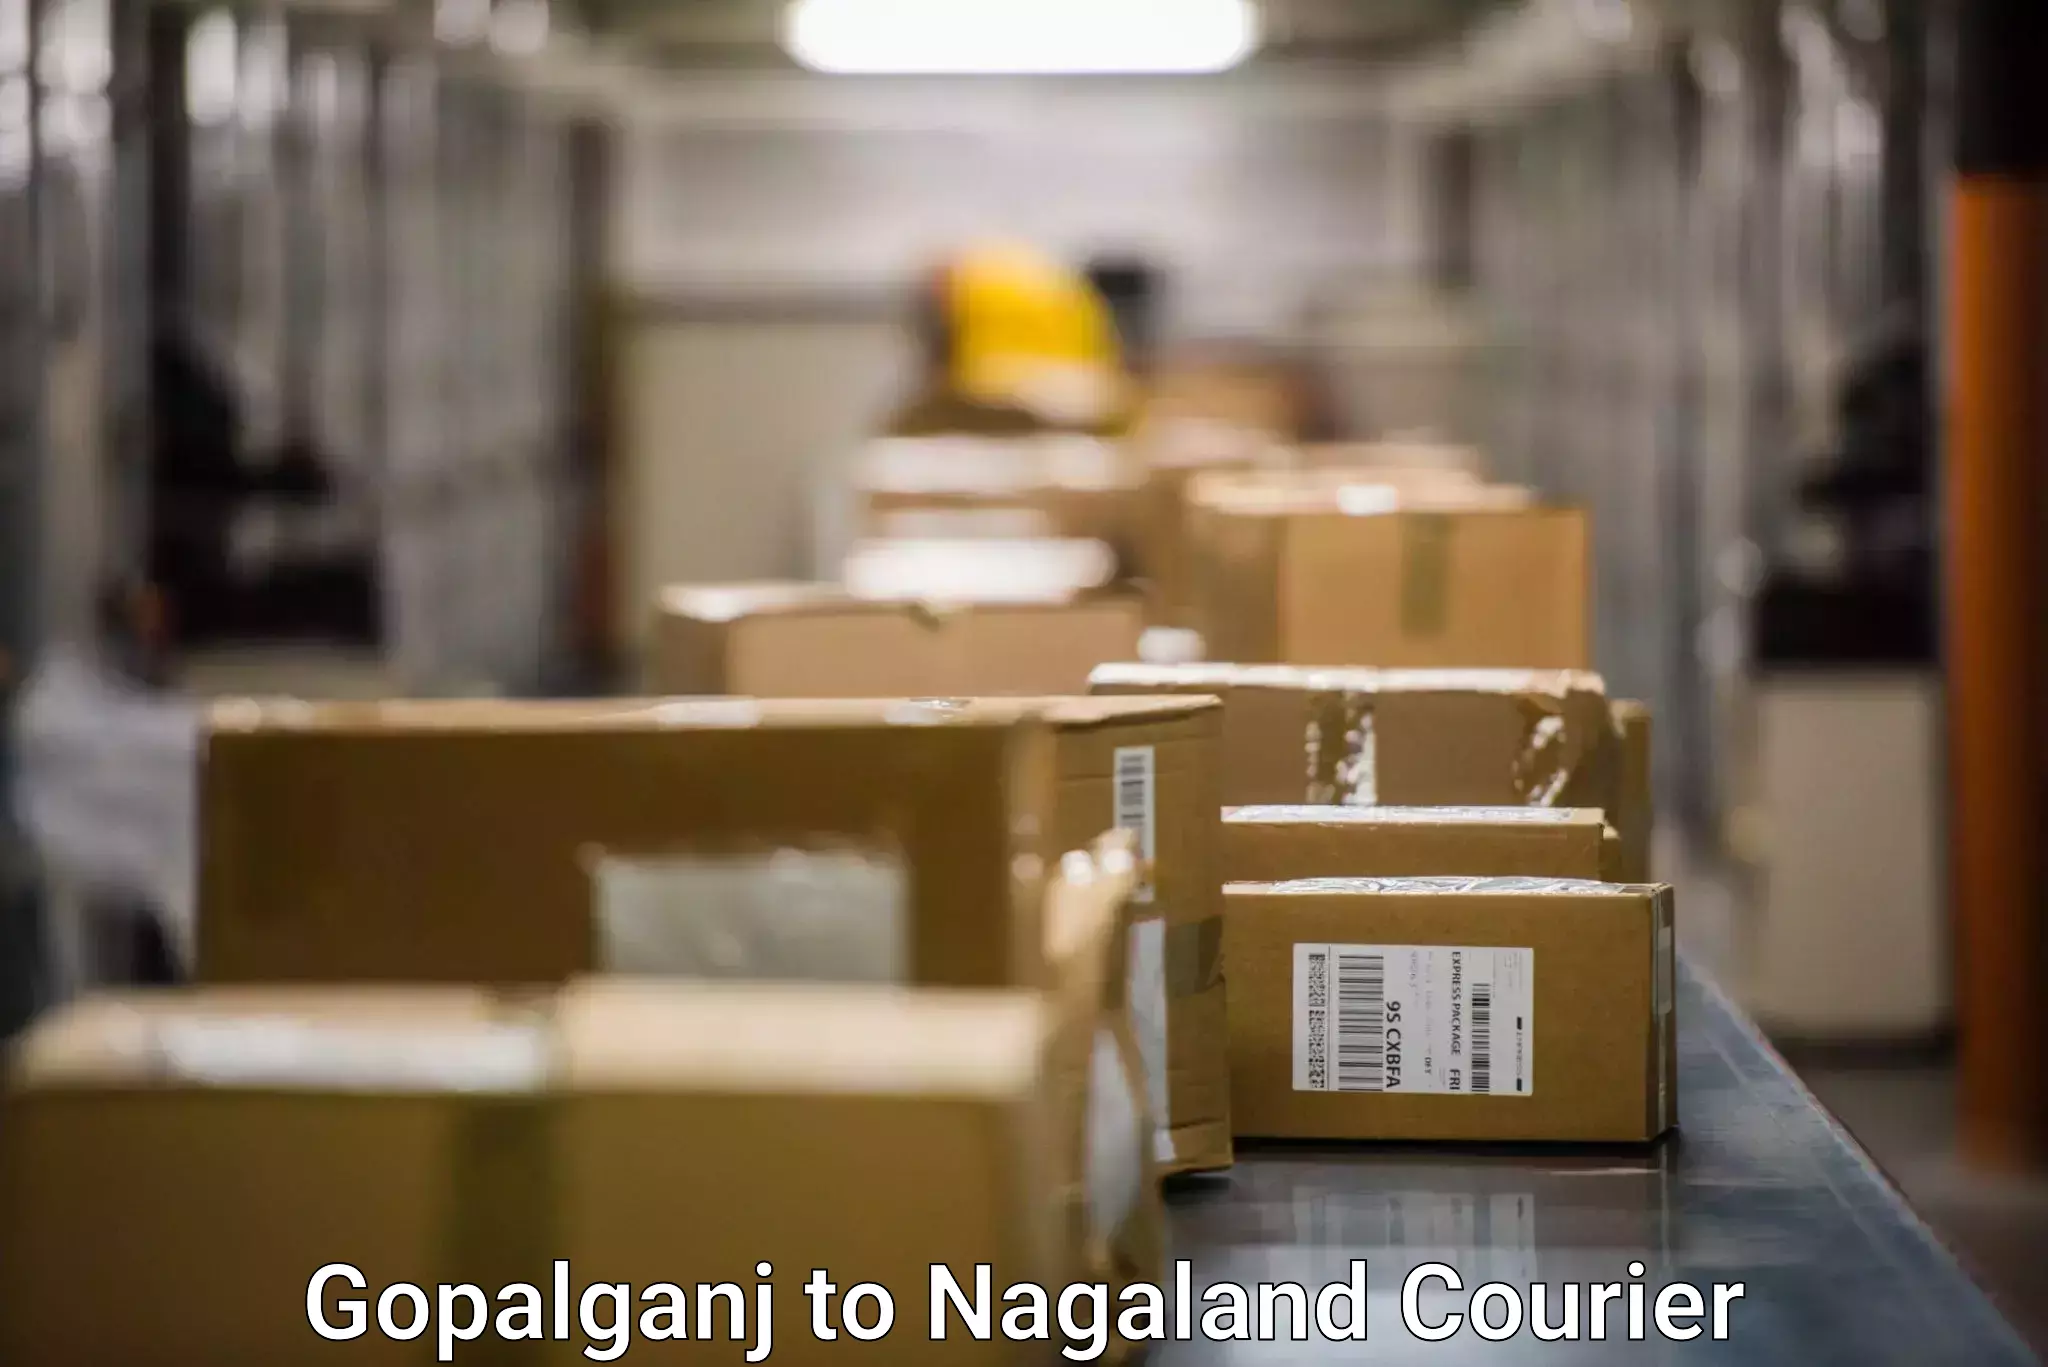 Large-scale shipping solutions Gopalganj to NIT Nagaland